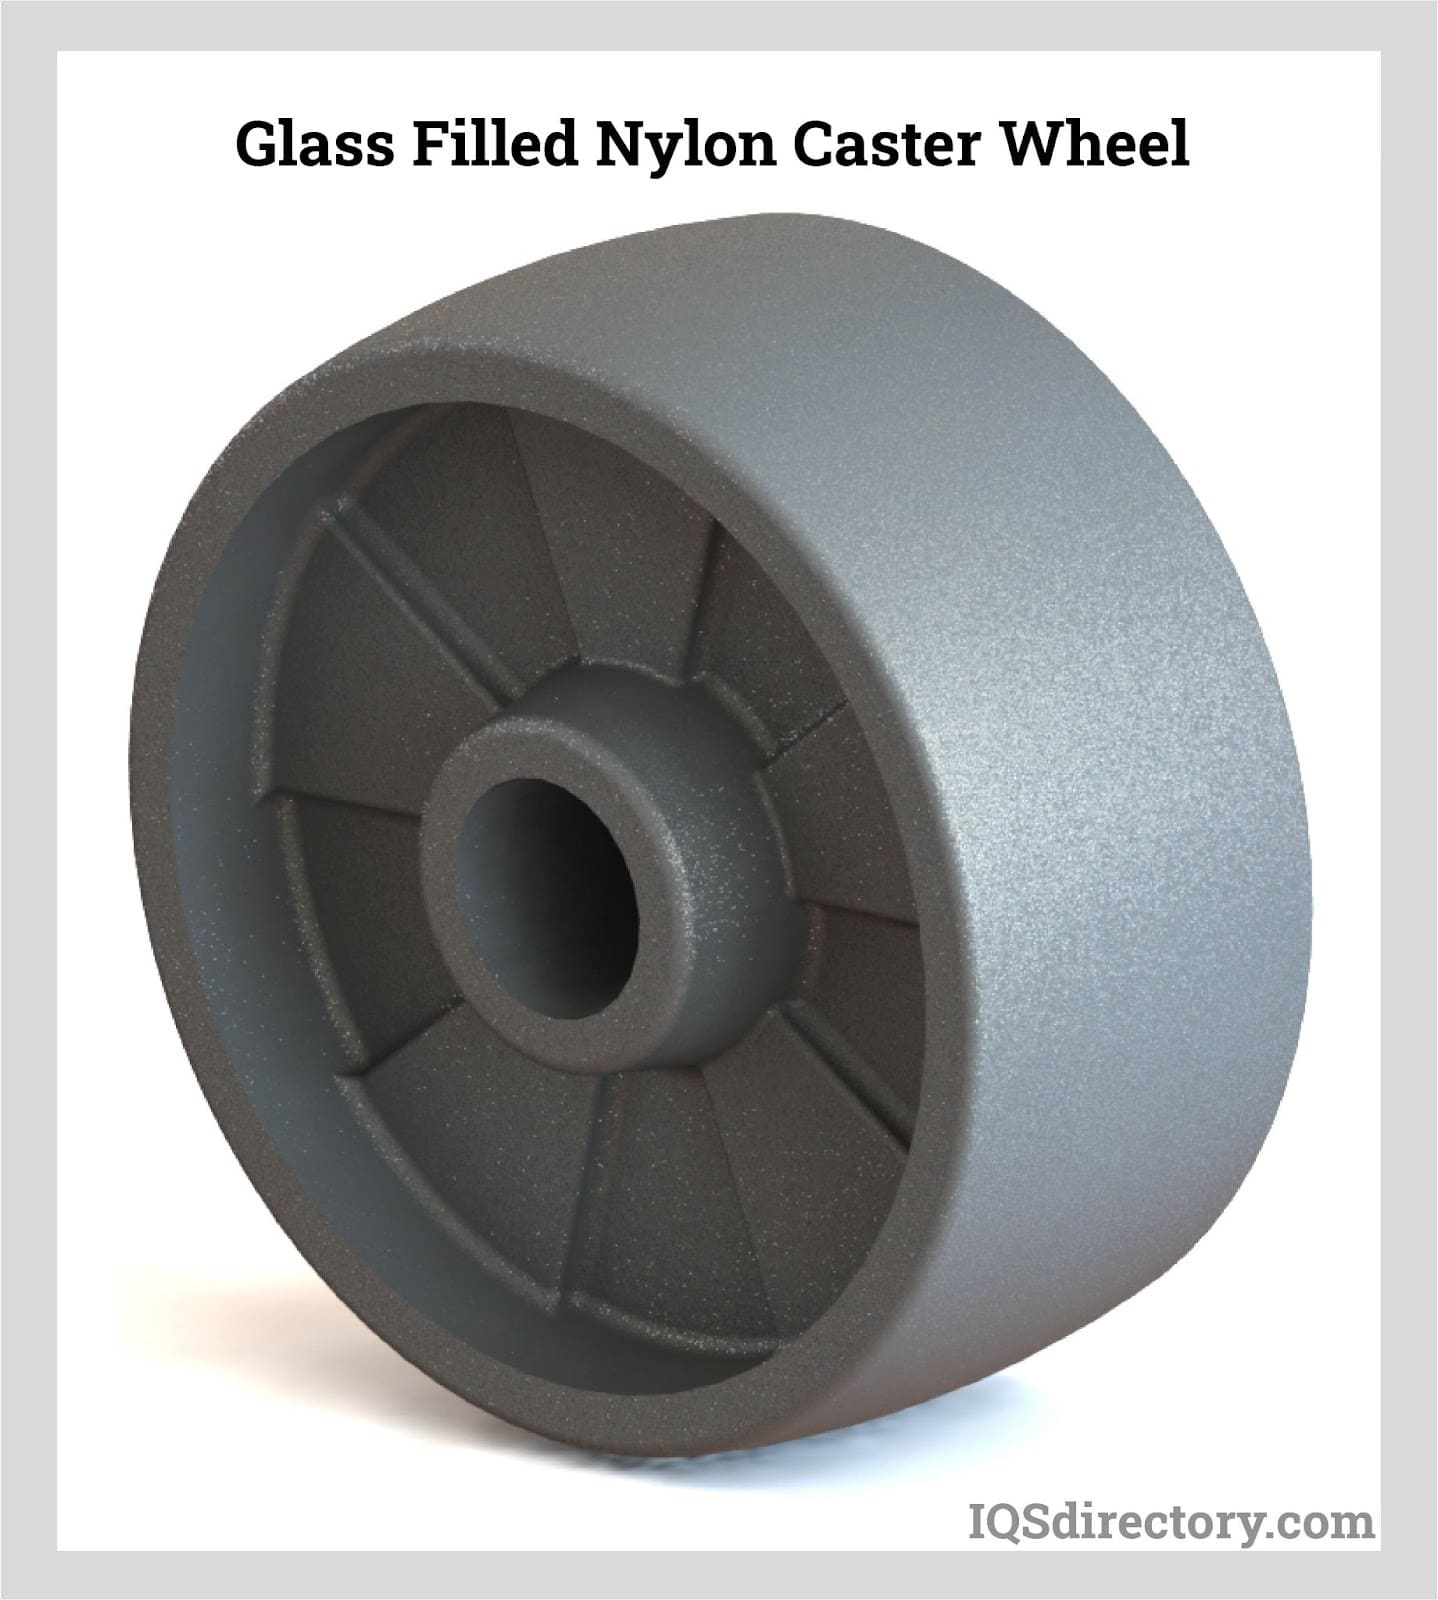 Glass Filled Nylon Caster Wheel